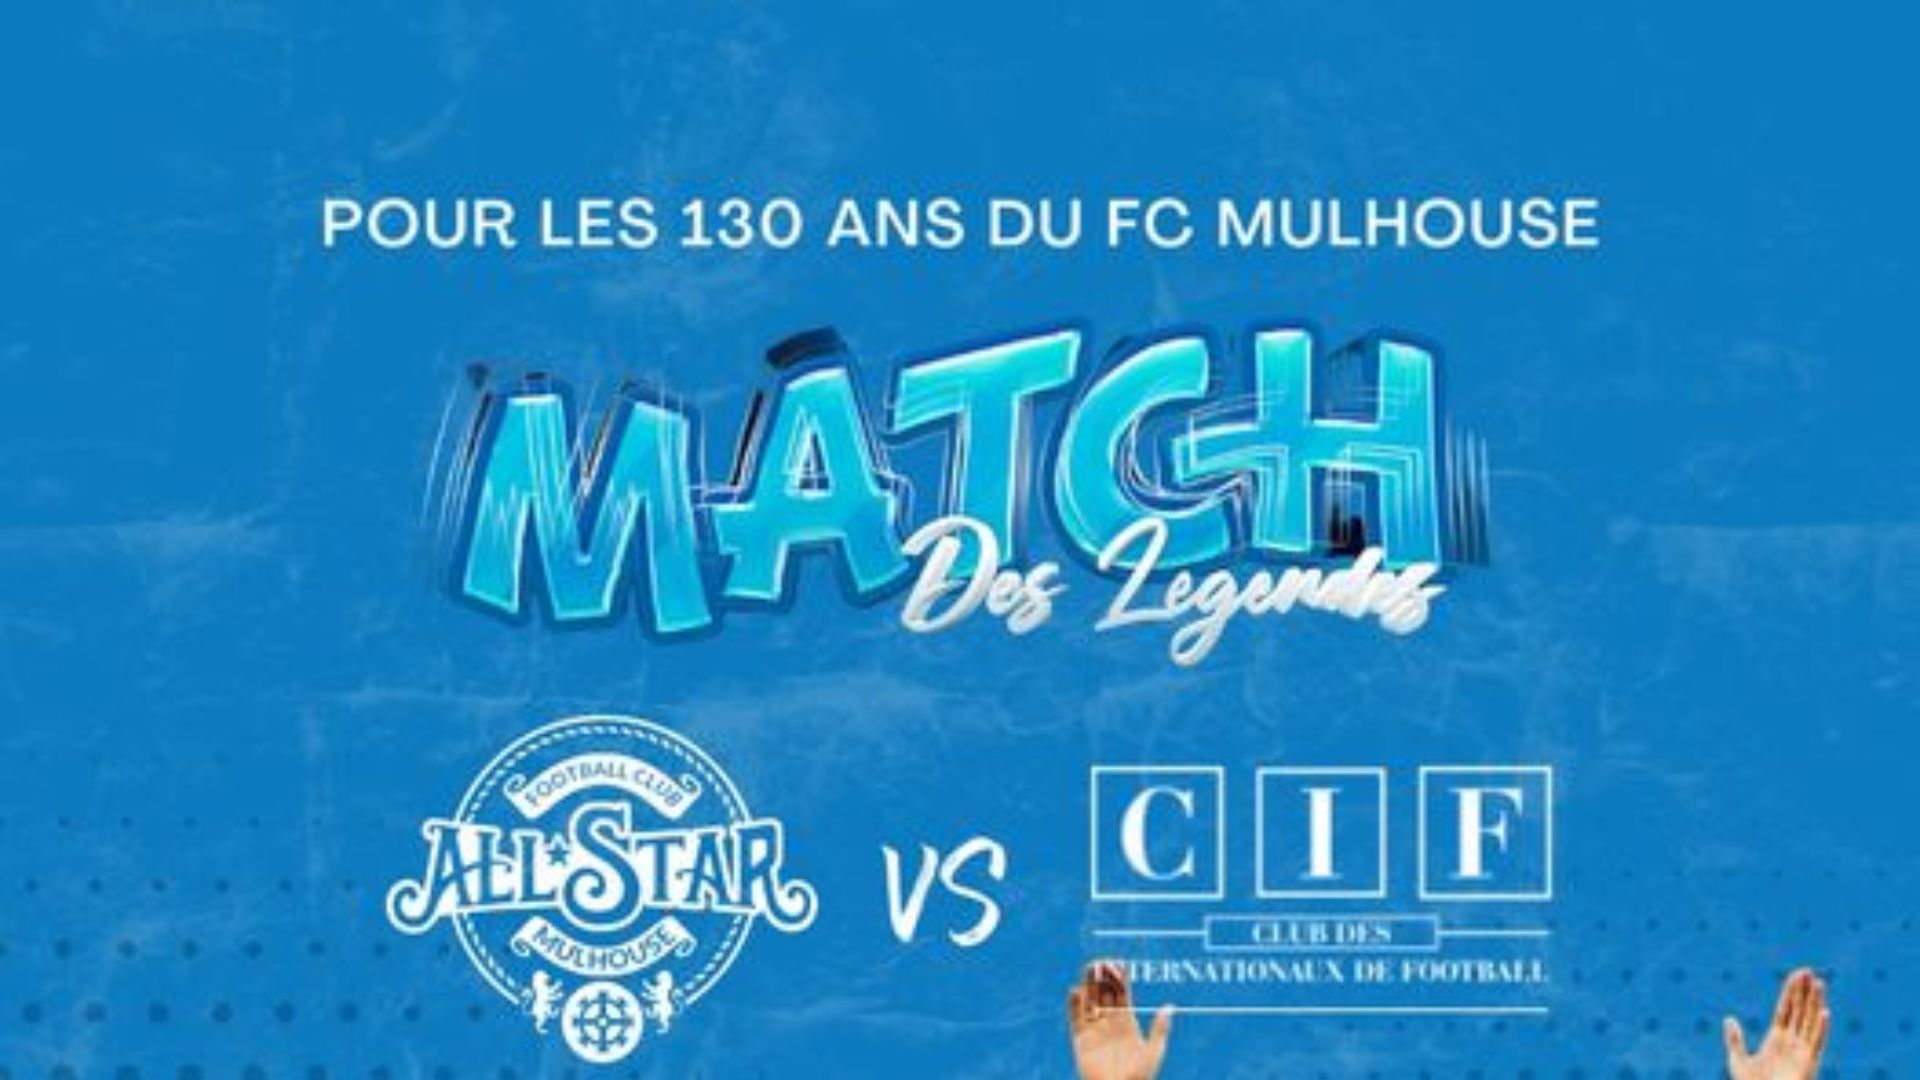 Match des légendes au FC Mulhouse